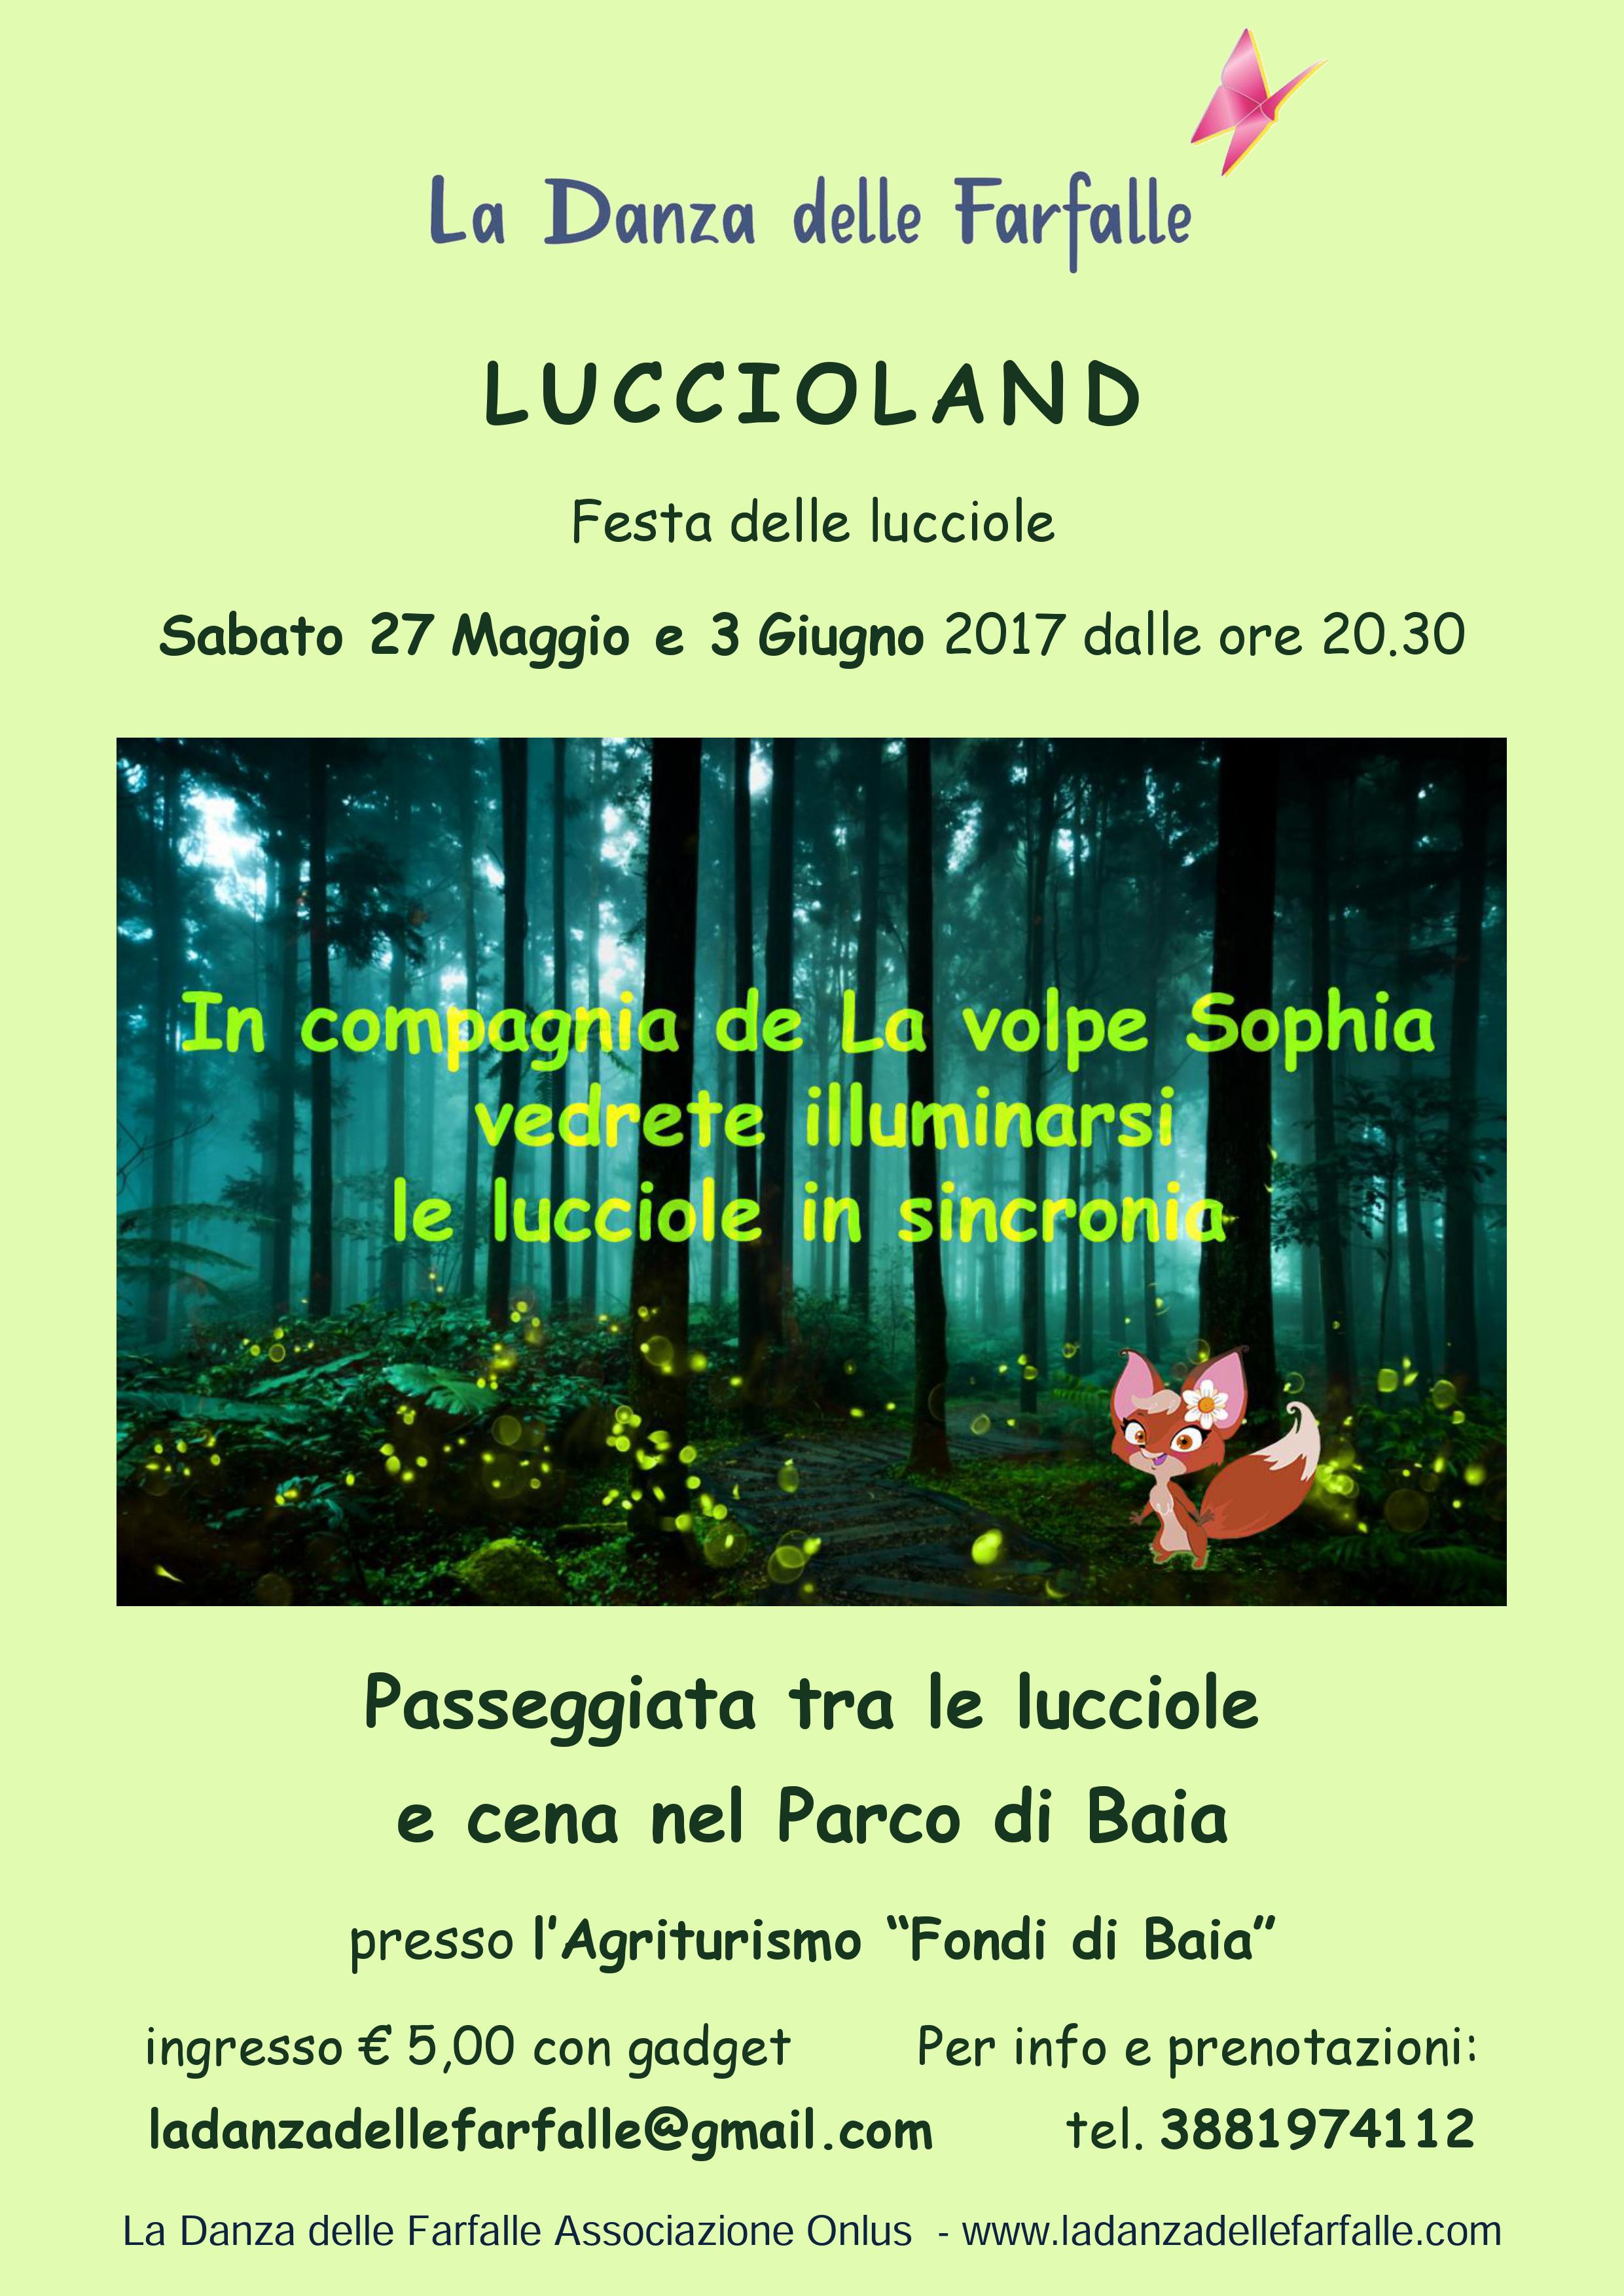 Luccioland-Parco-di-Baia 27 Maggio e 3 Giugno 2017